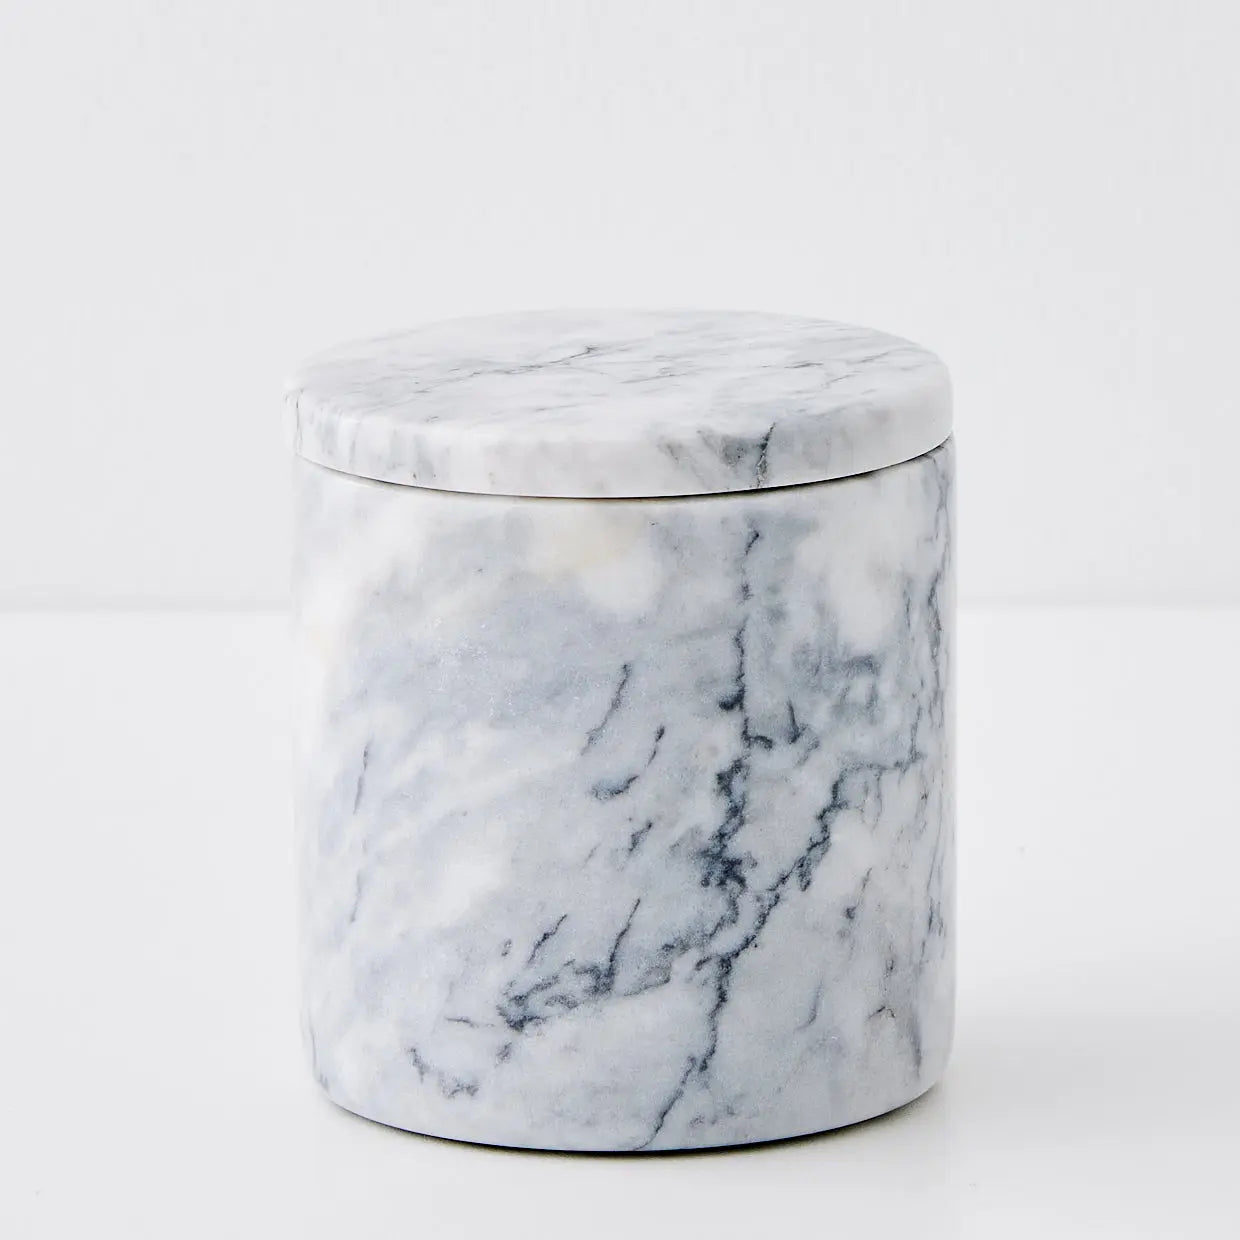 Stone Storage Jar with Lid - GigiandTom